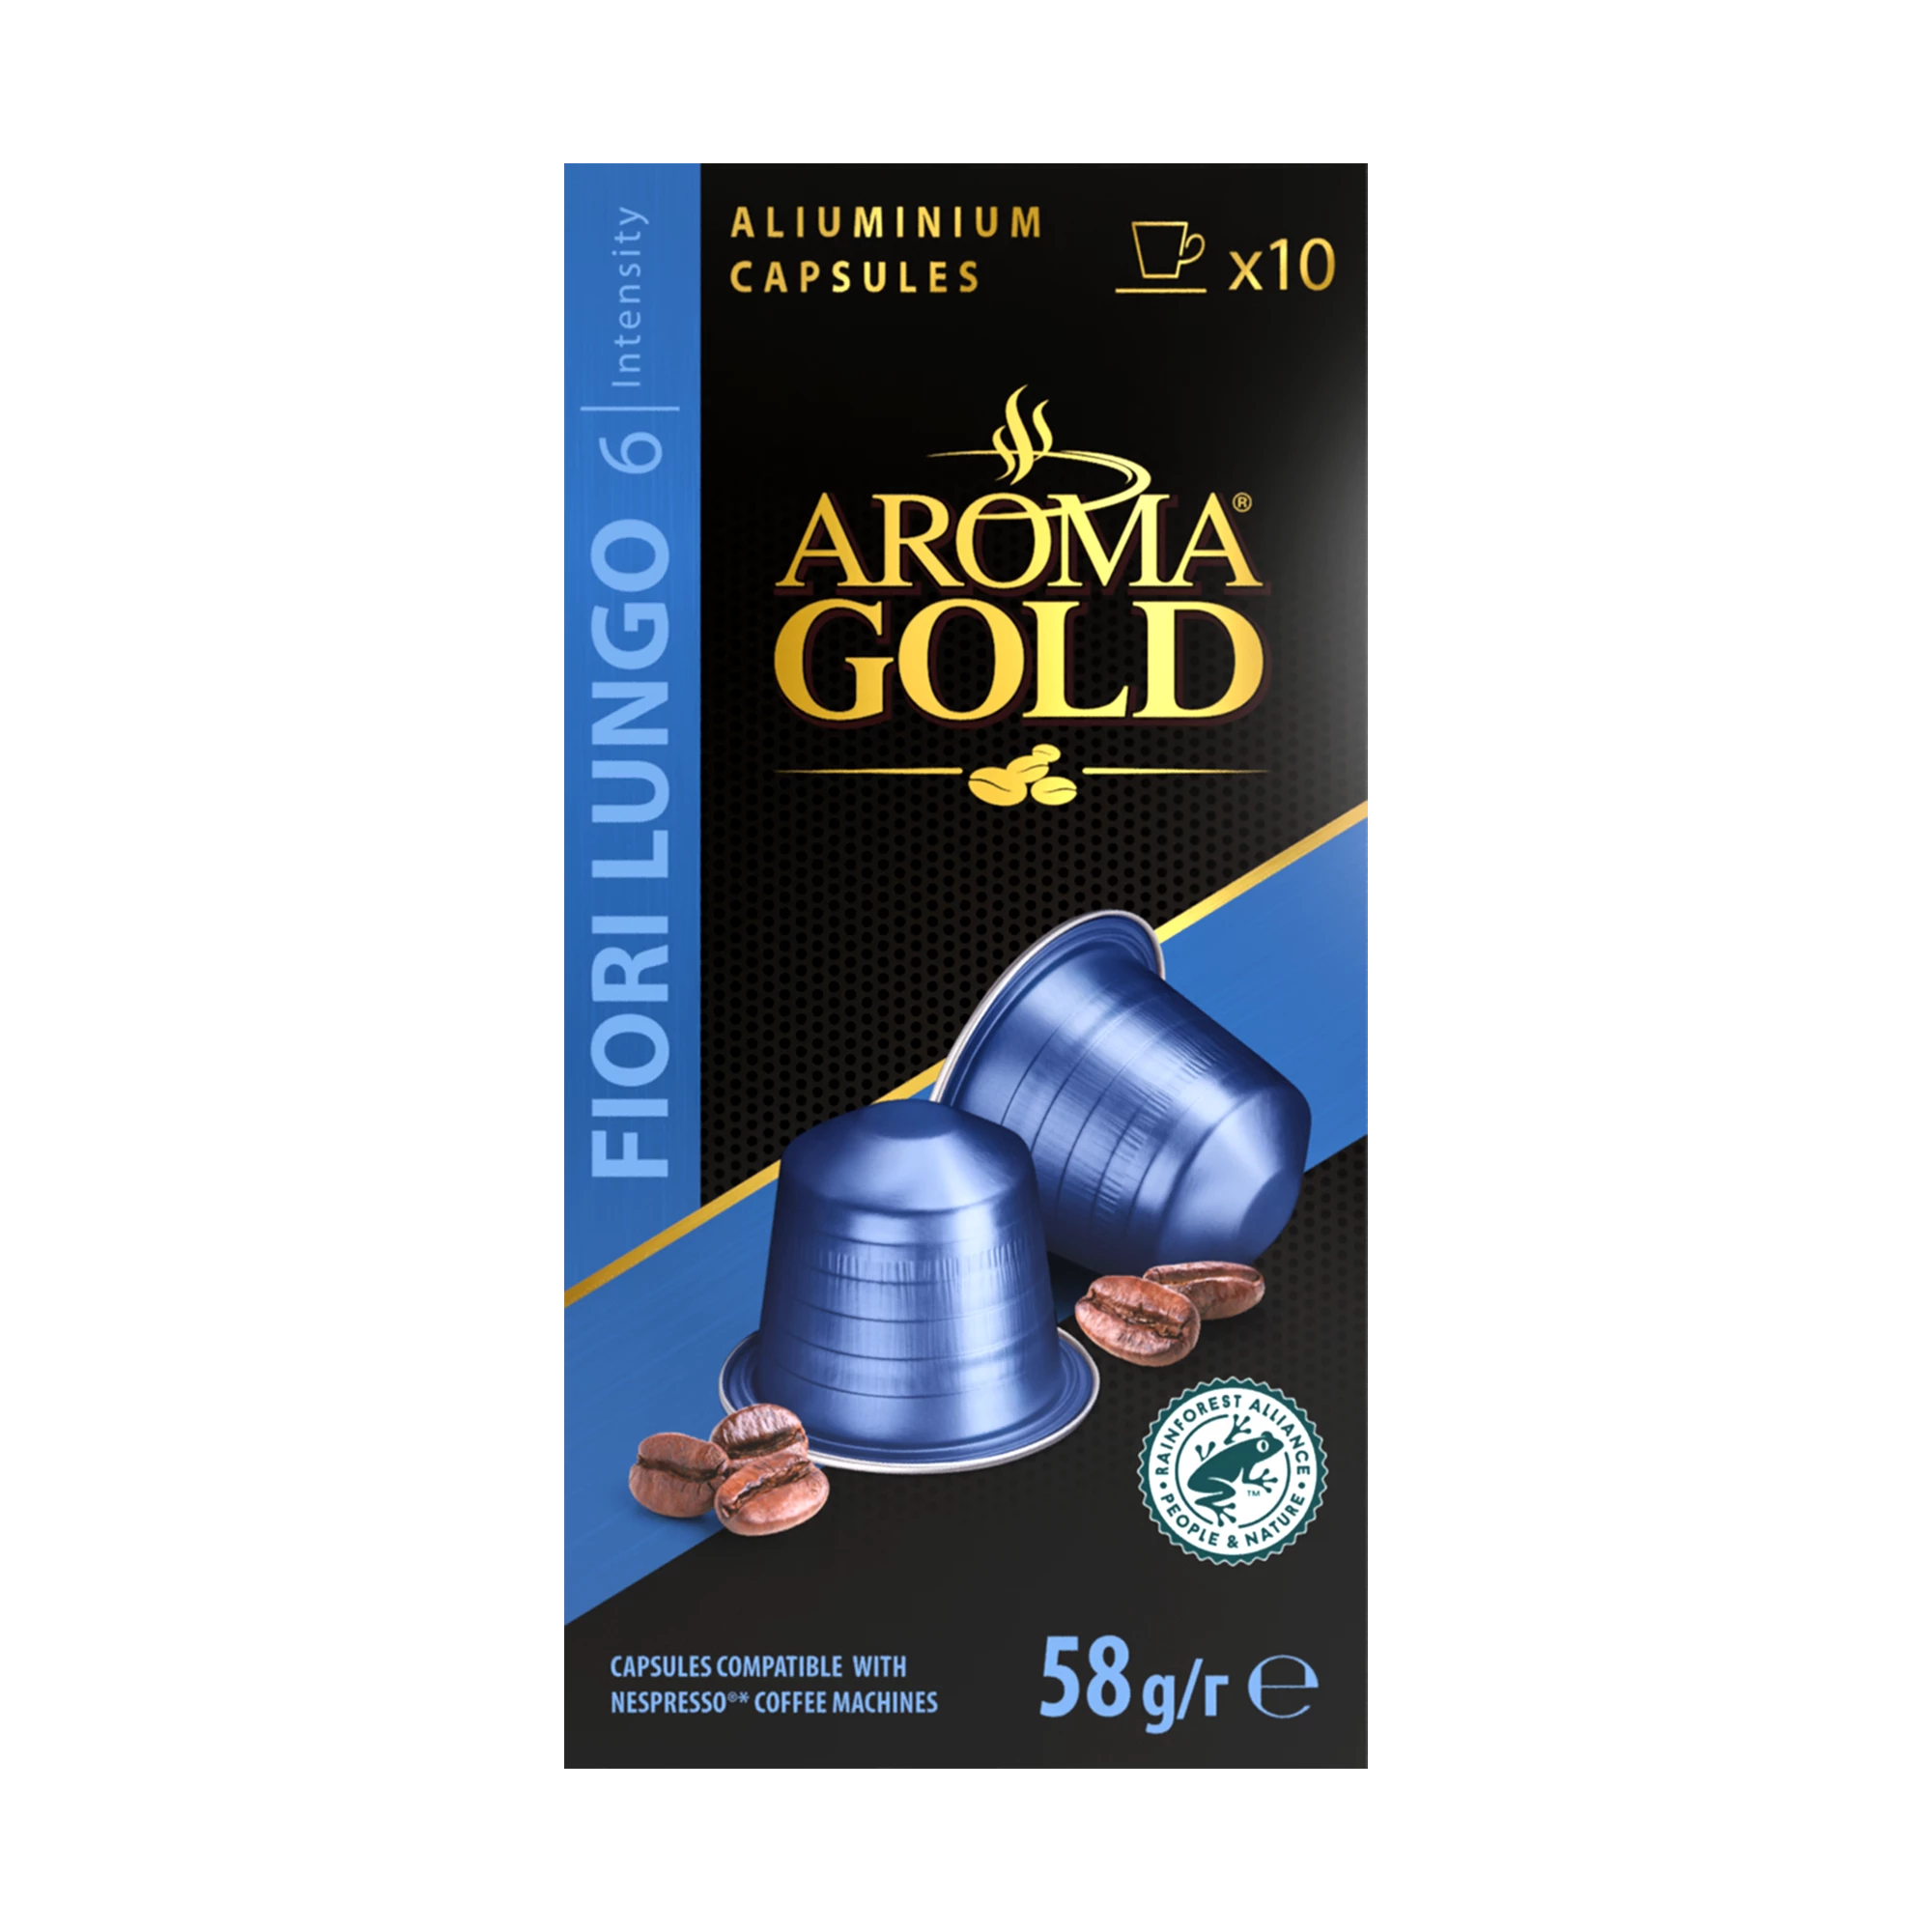 Café  Fiori Lungo  Compatible Nespresso X 10. (intensity 6) - Aroma Gold